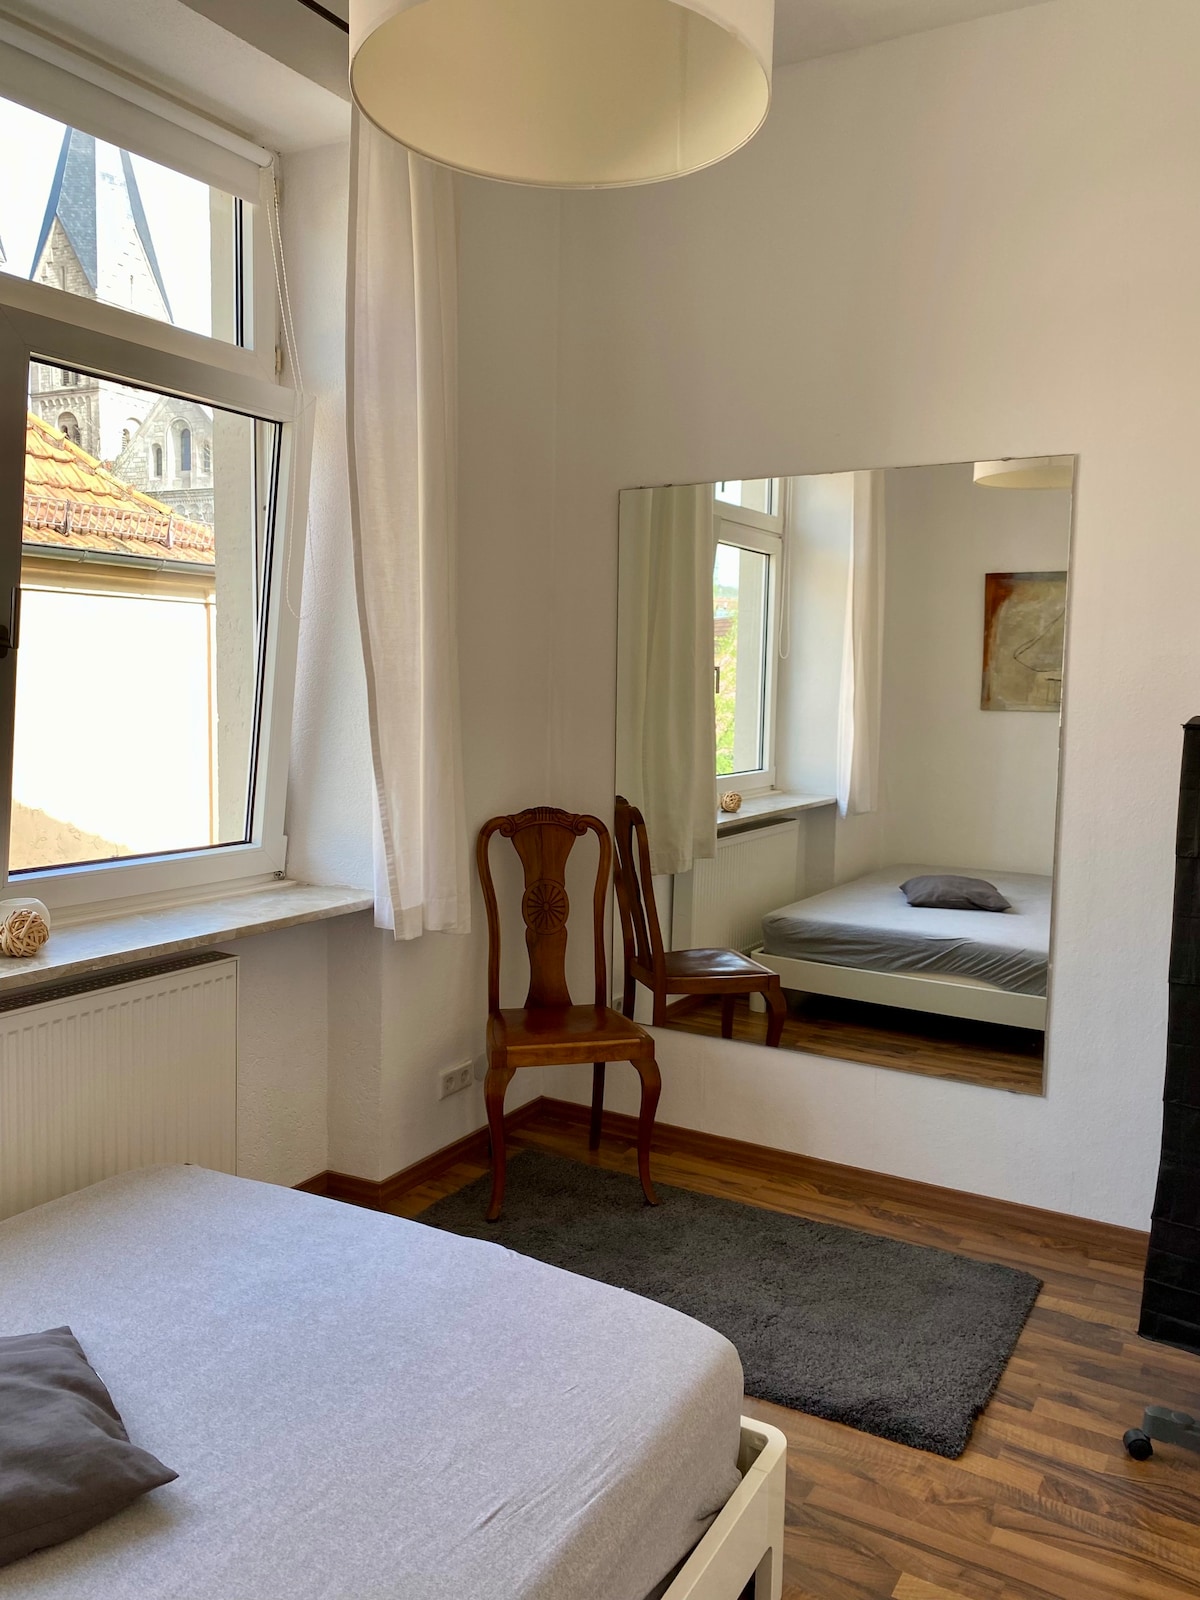 Wunderschöne Wohnung mit Altbau-Charme in Würzburg